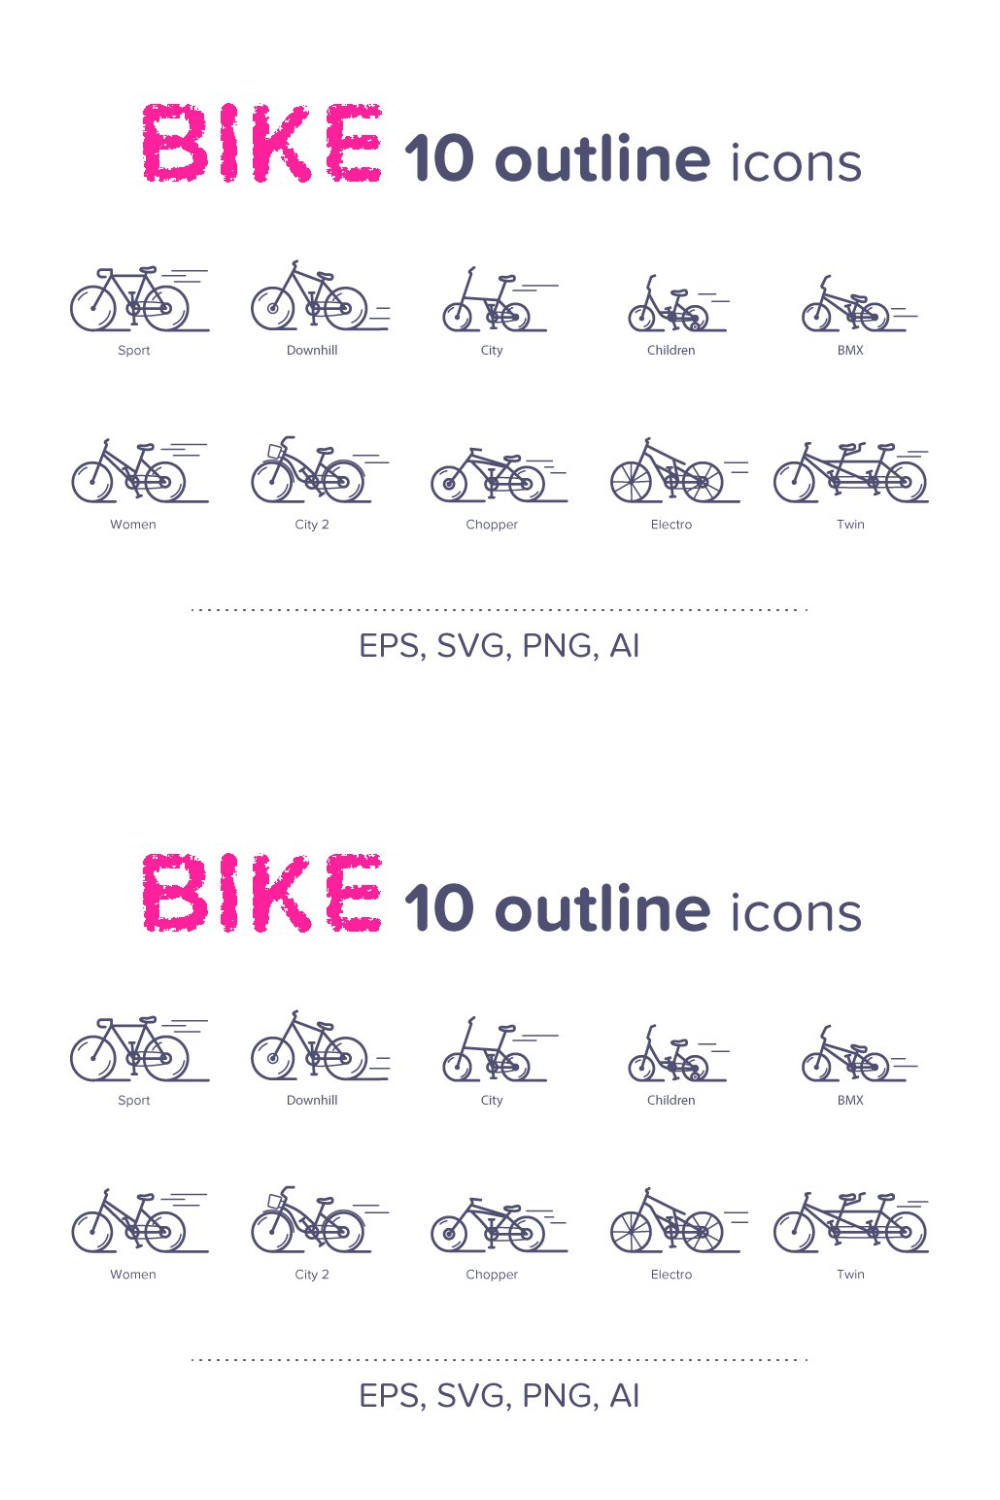 Bike (10 Outline Icons) - Pinterest.